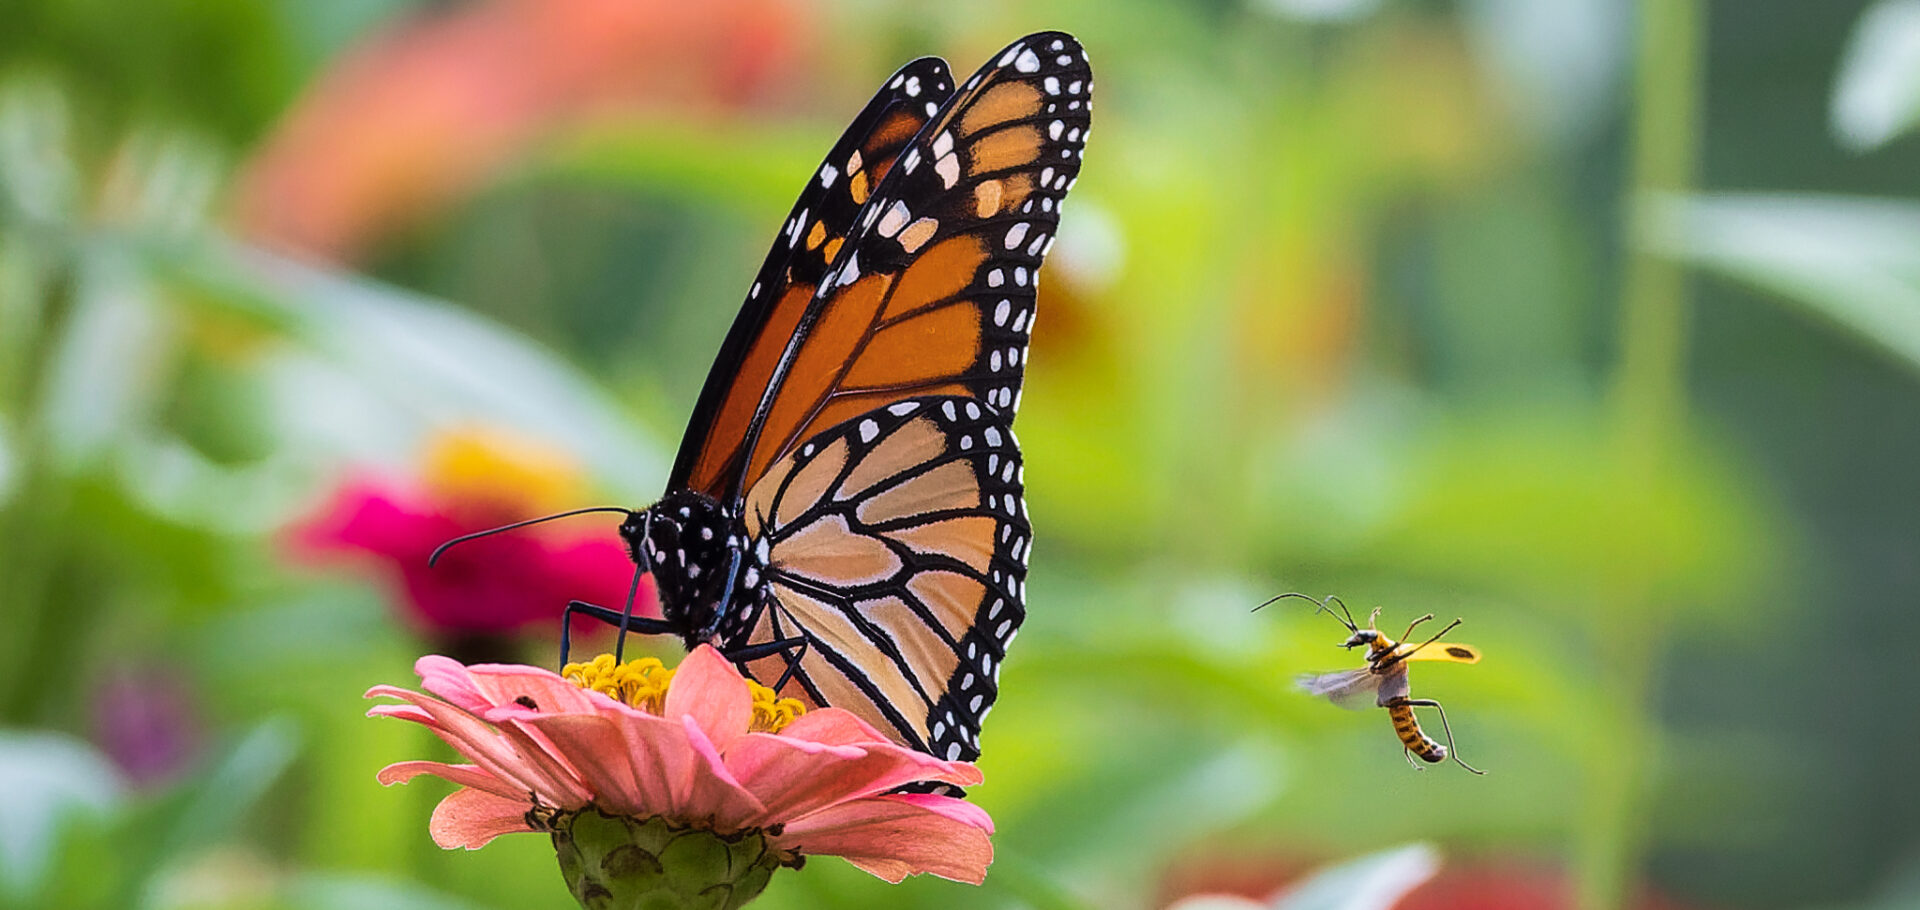 Uncommon Delights for Gardeners, Birds and Butterflies